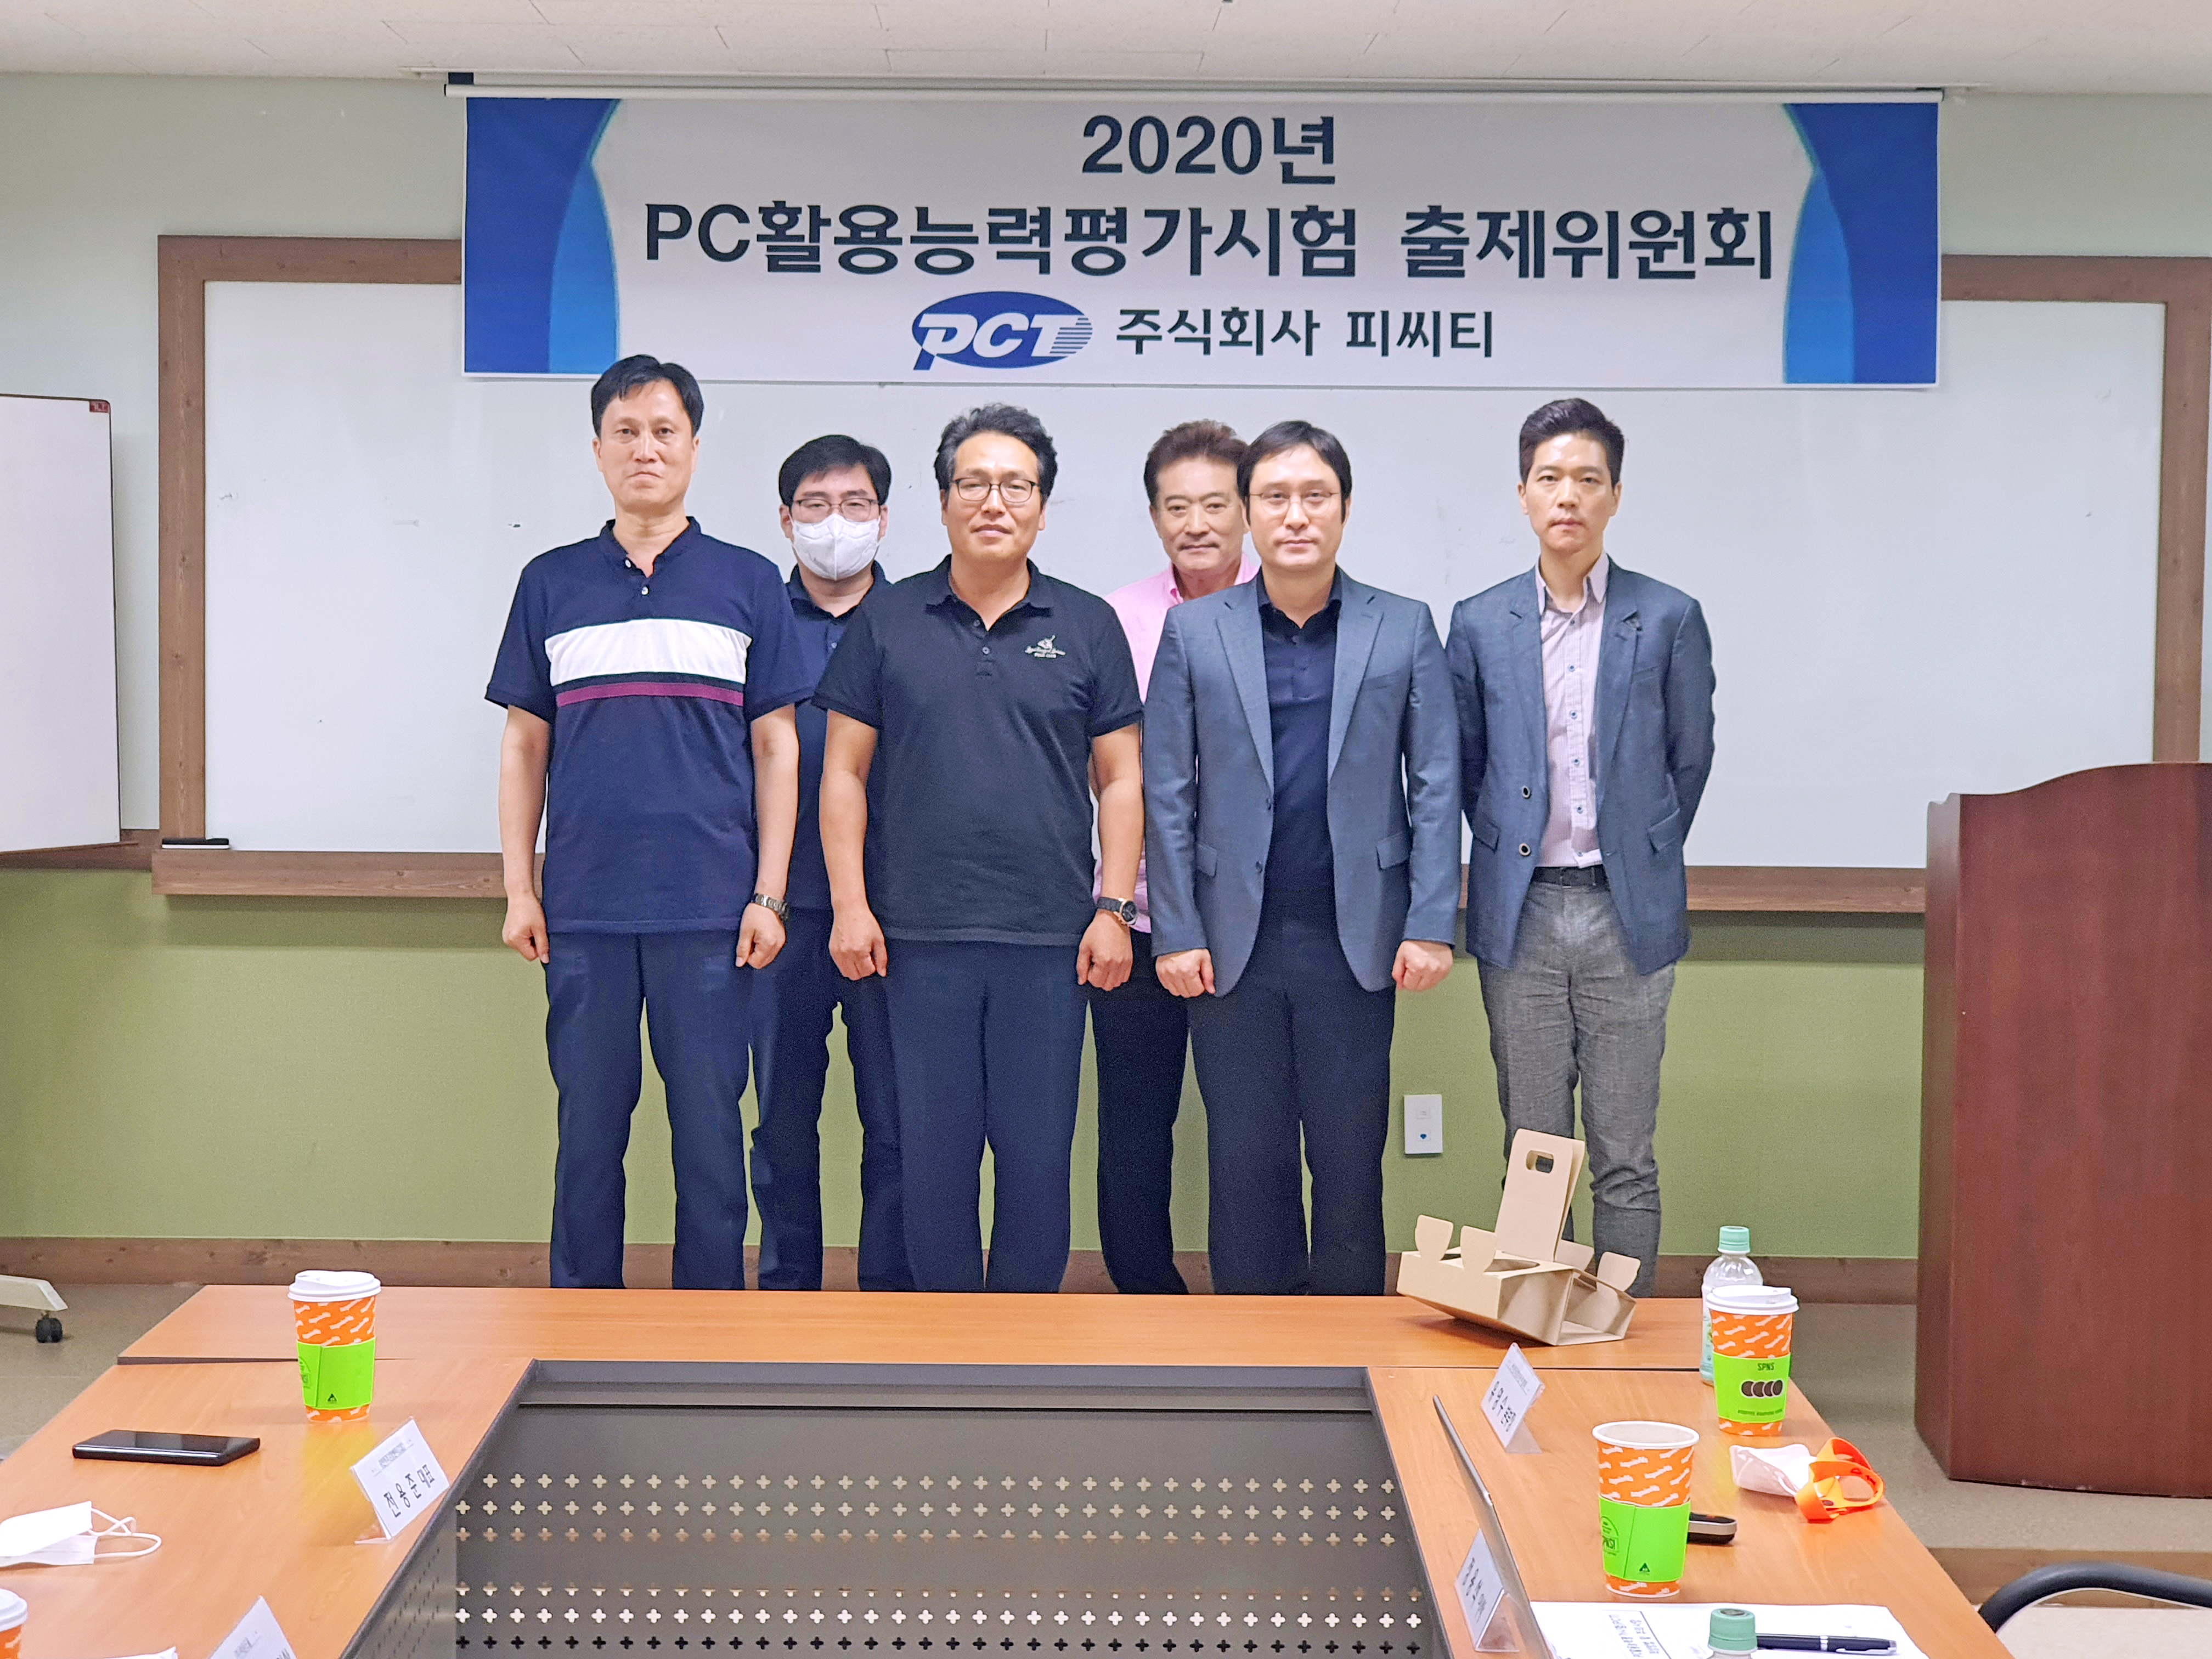 2020년 PC활용능력평가시험(PCT) 출제위원회 개최